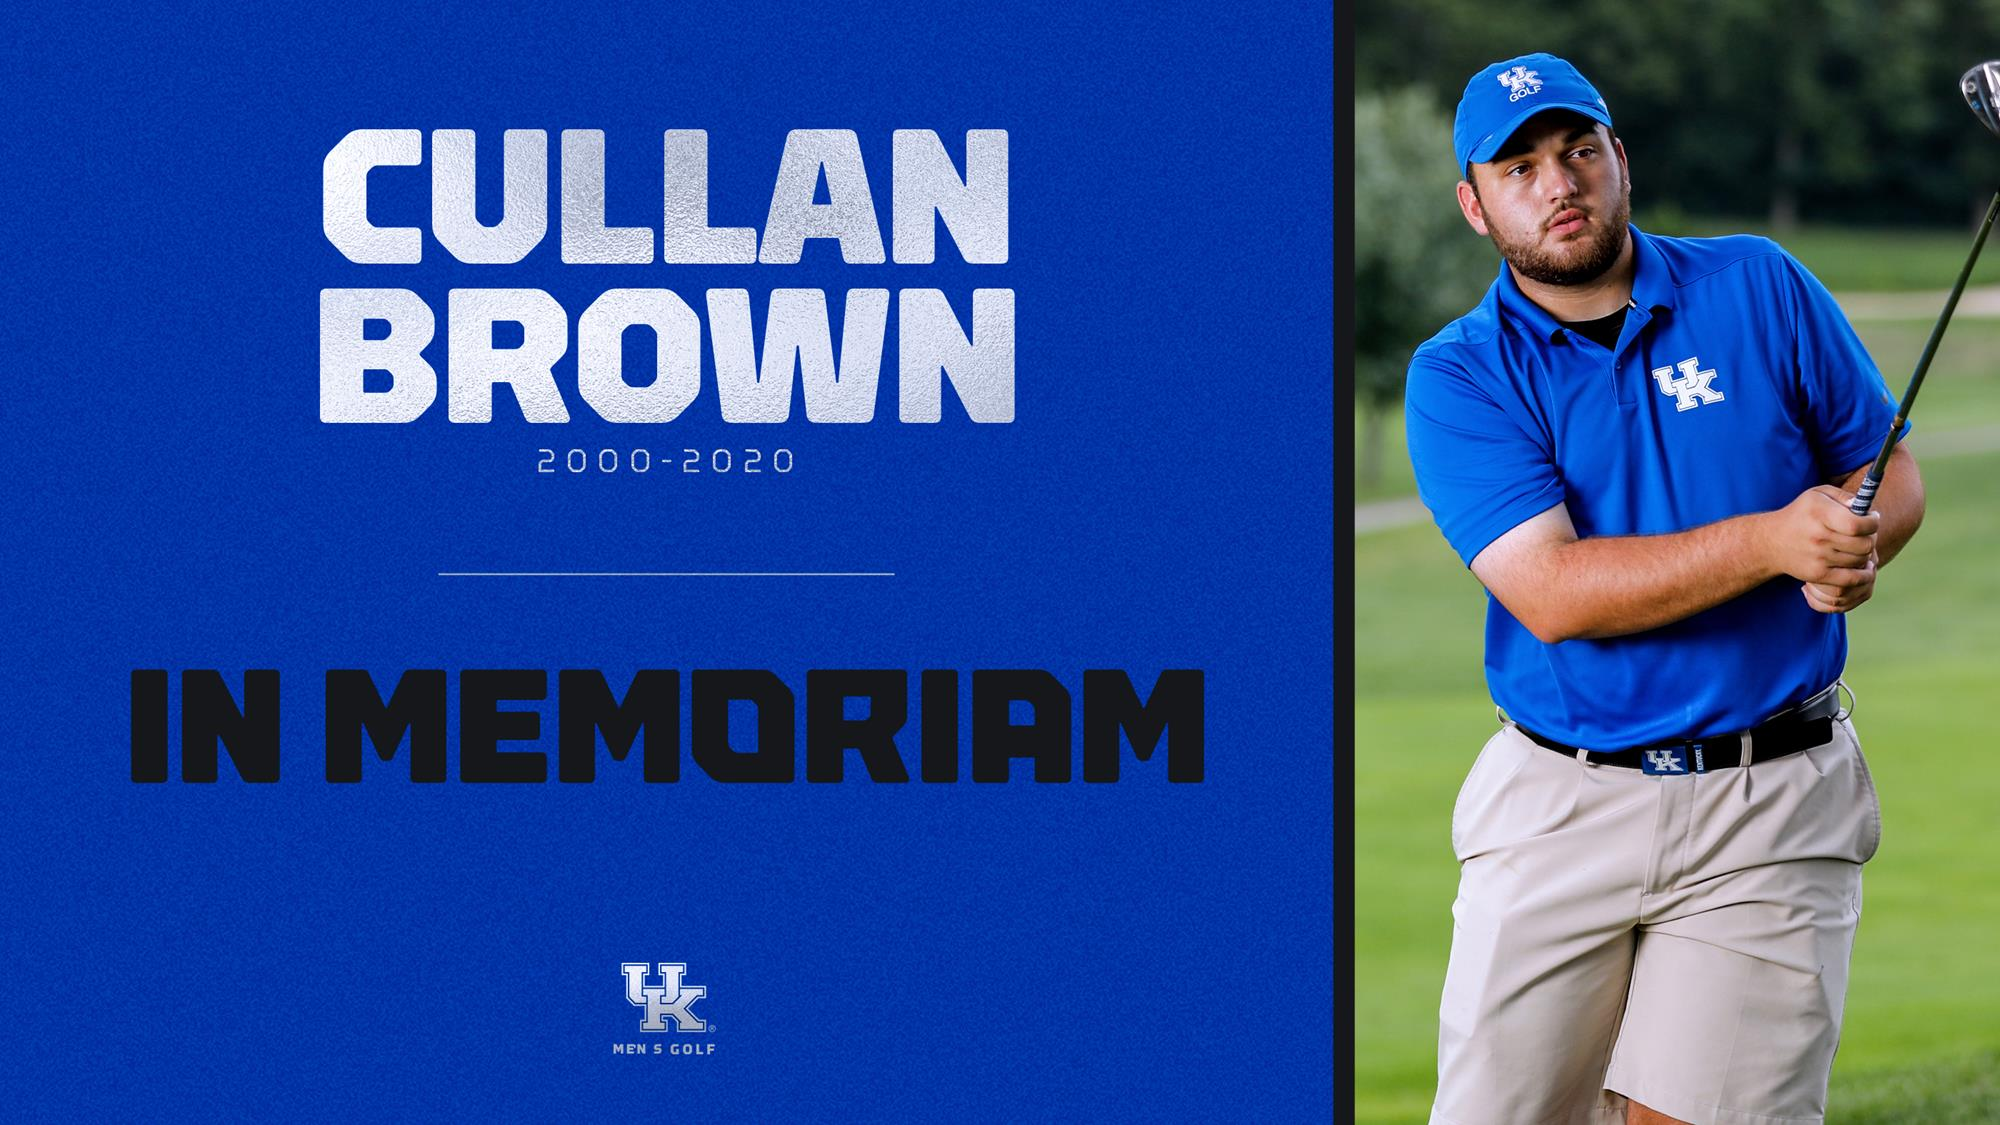 Kentucky Men’s Golfer Cullan Brown Has Died